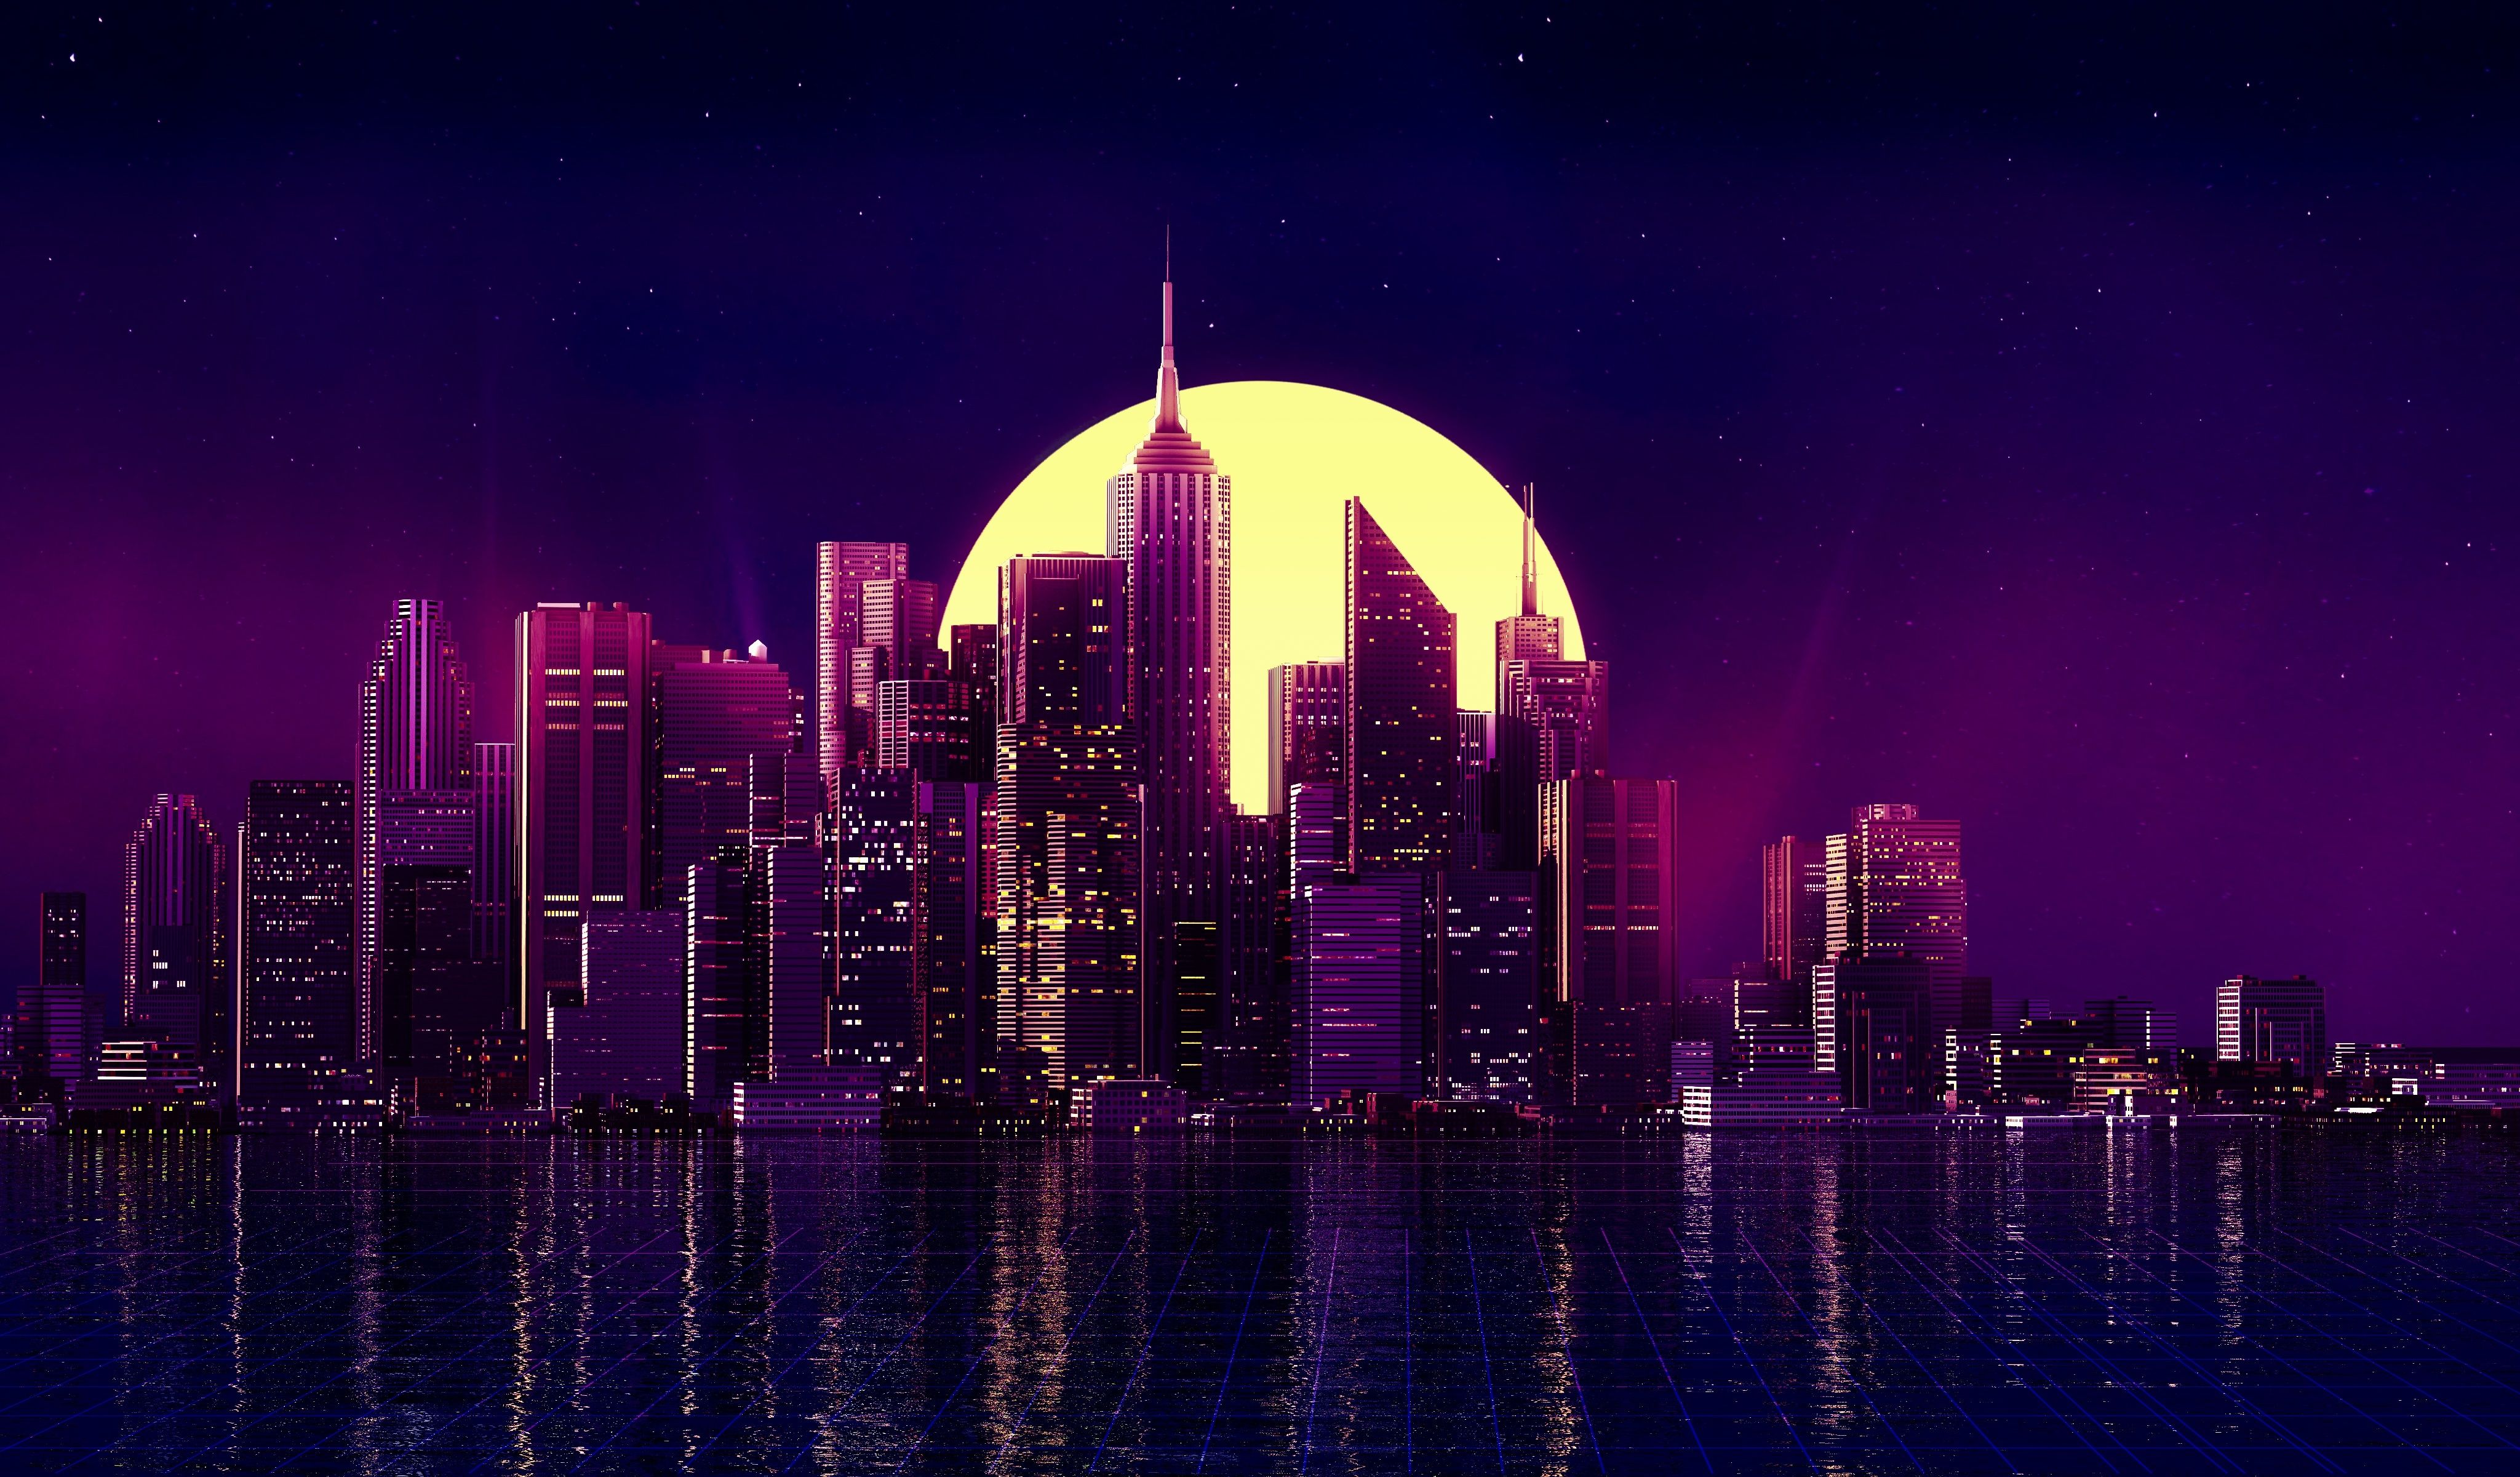 Retro Wave Purple Skyscraper City Wallpaper, HD Artist 4K Wallpaper, Image, Photo and Background